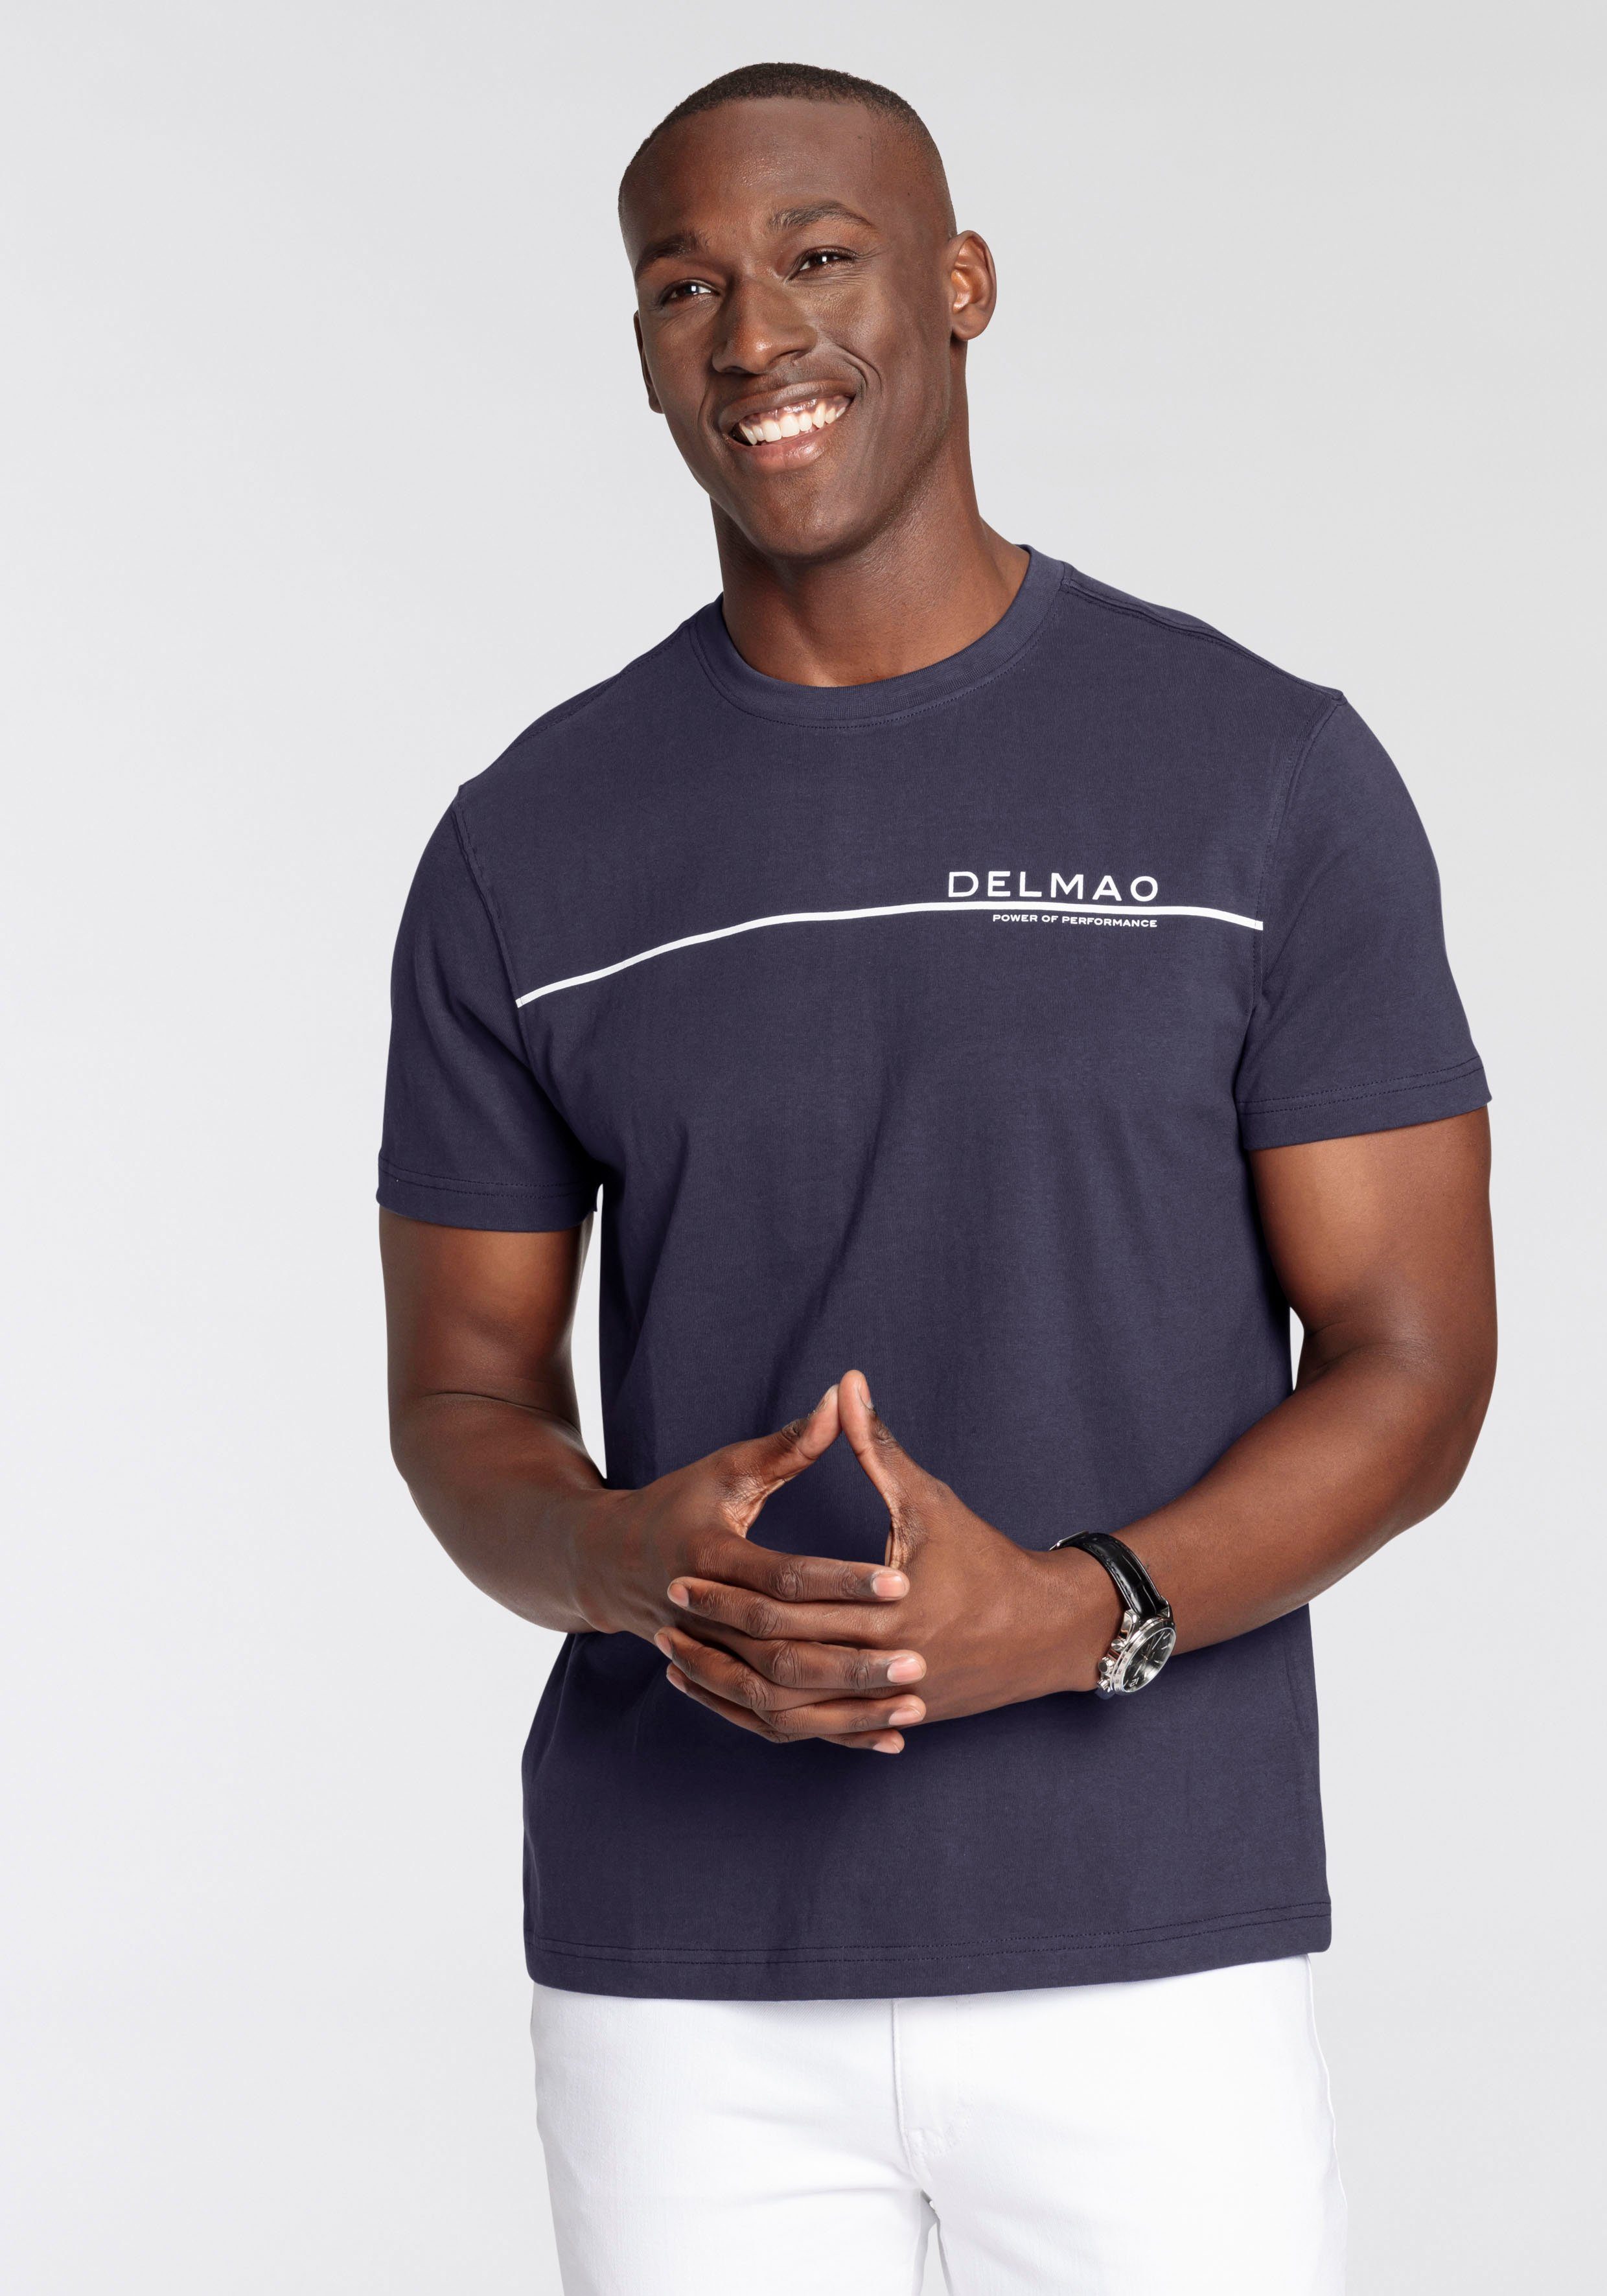 DELMAO T-Shirt mit modischem Brustprint - NEUE MARKE! dunkelblau